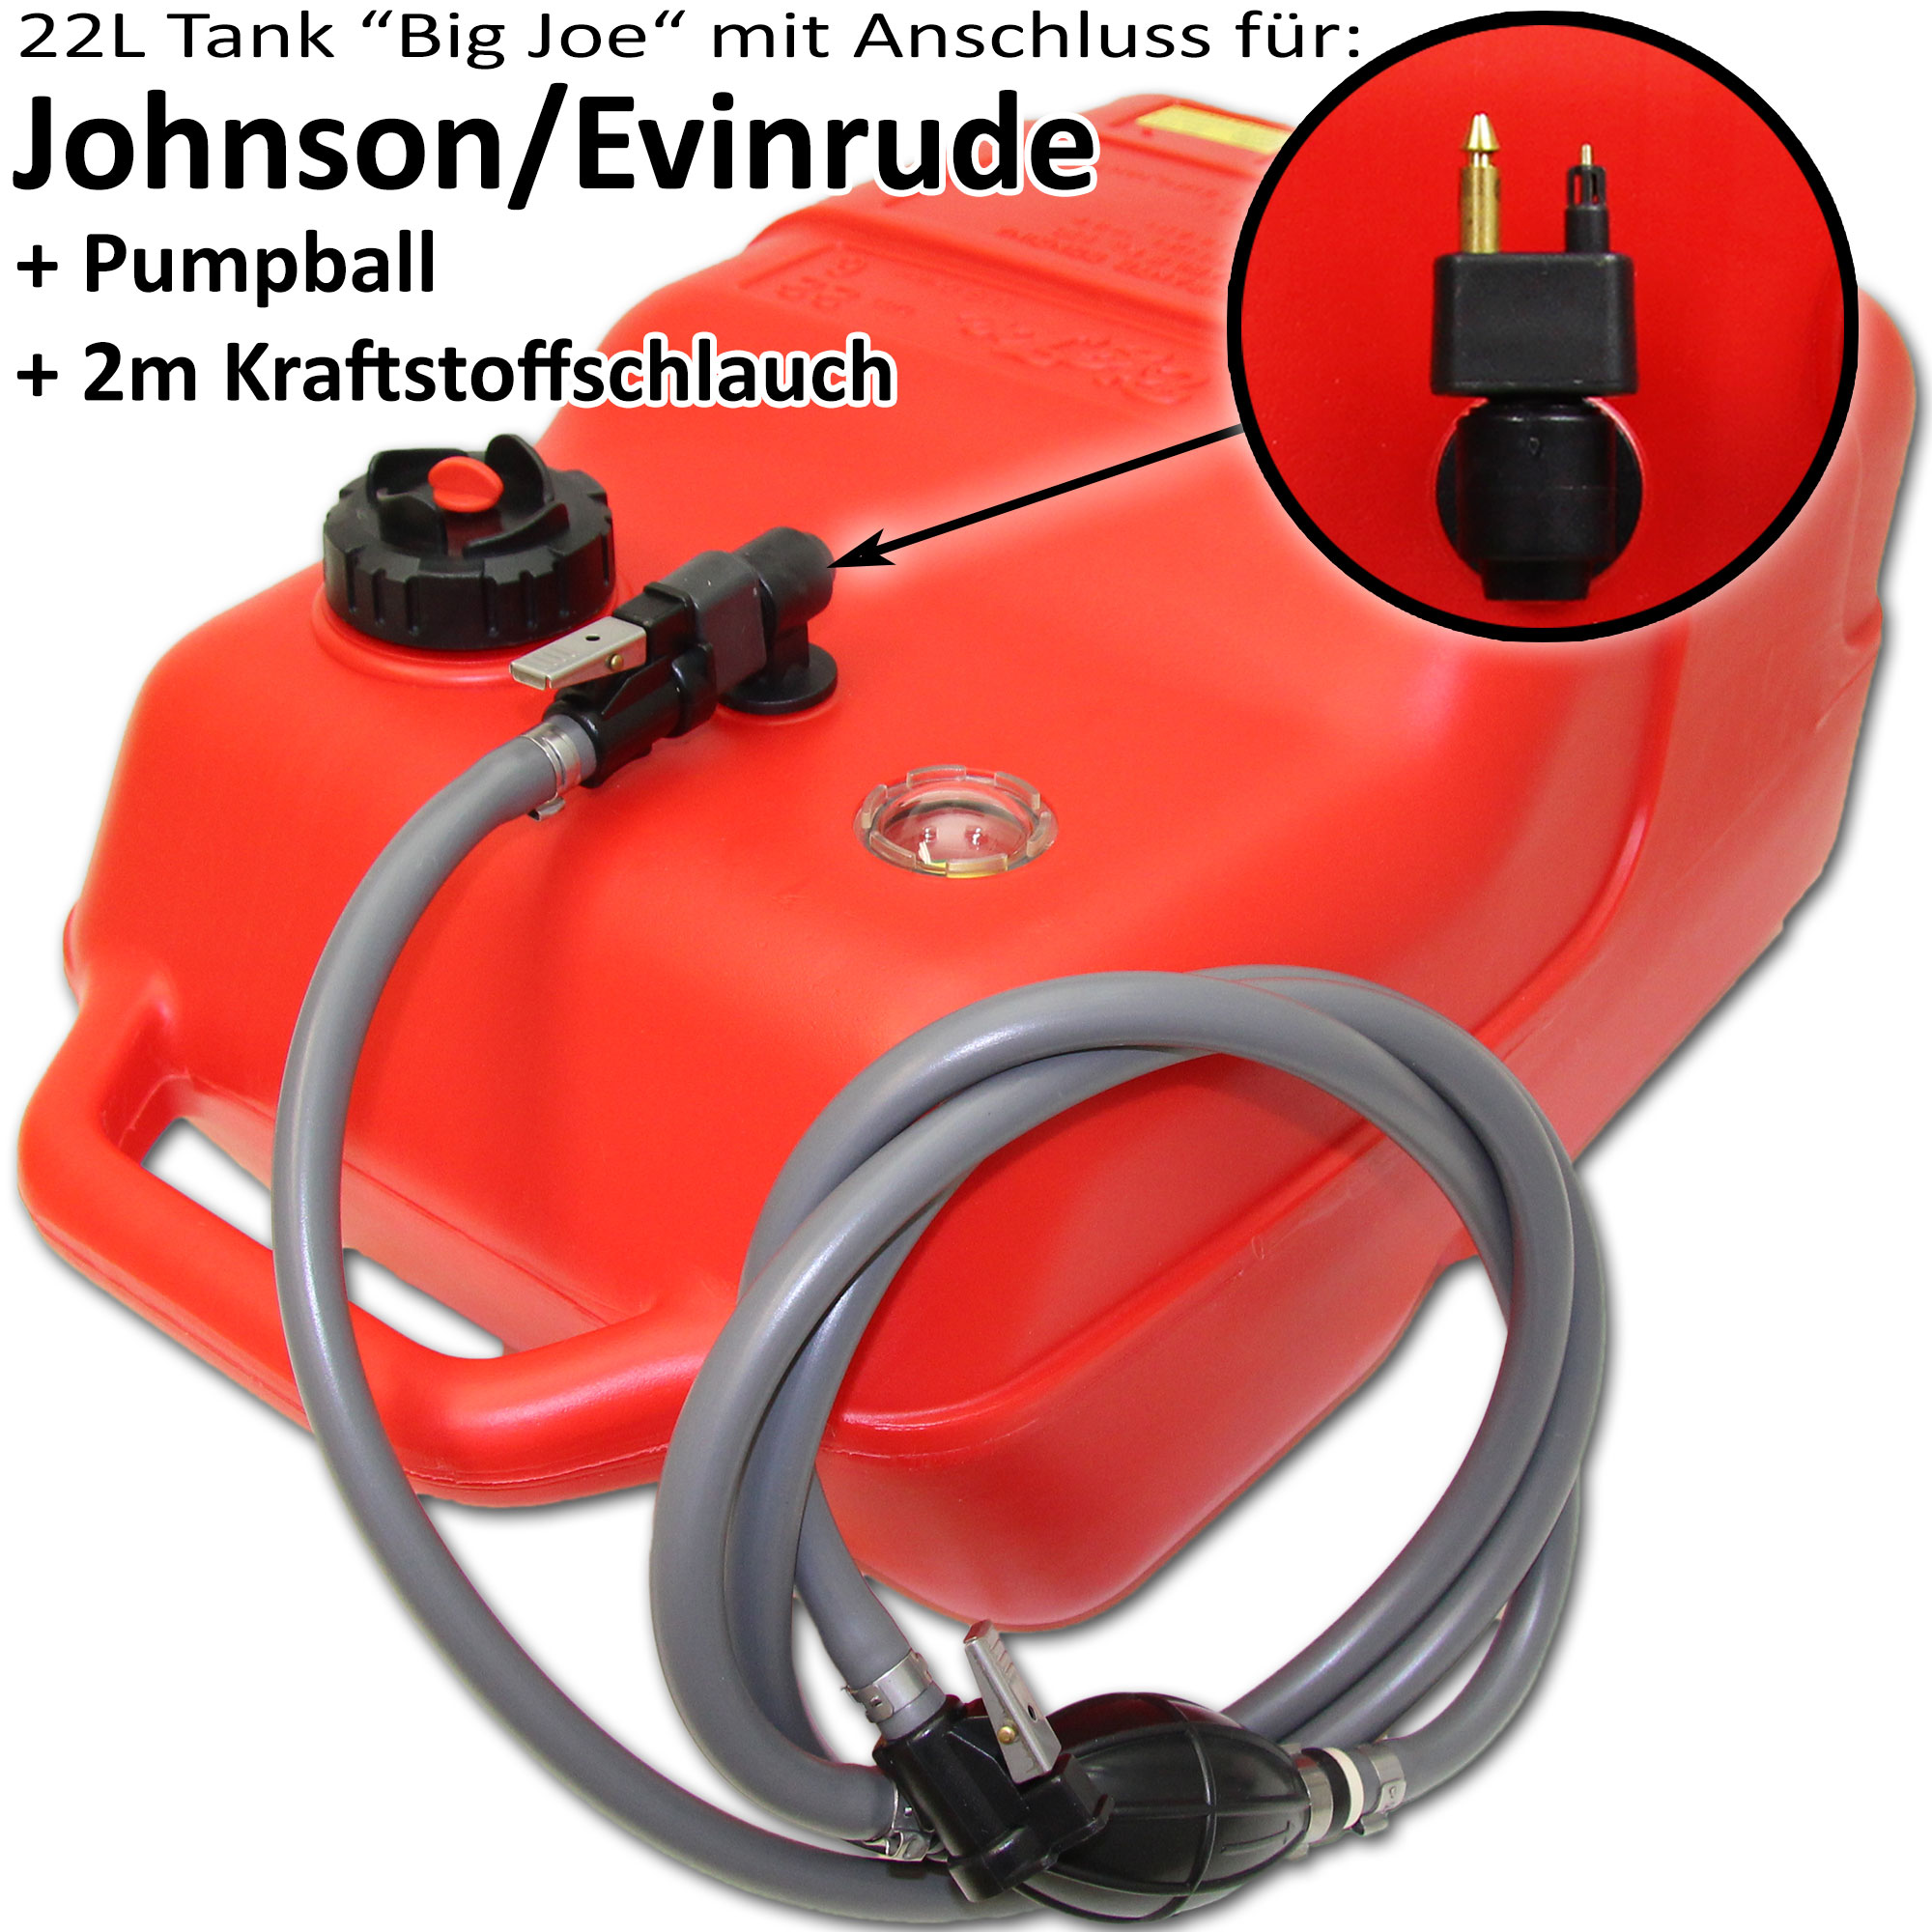 Kraftstofftank rot mit Johnson & Evinrude Anschluss / 2m Schlauch / Füllstandsanzeige manuell